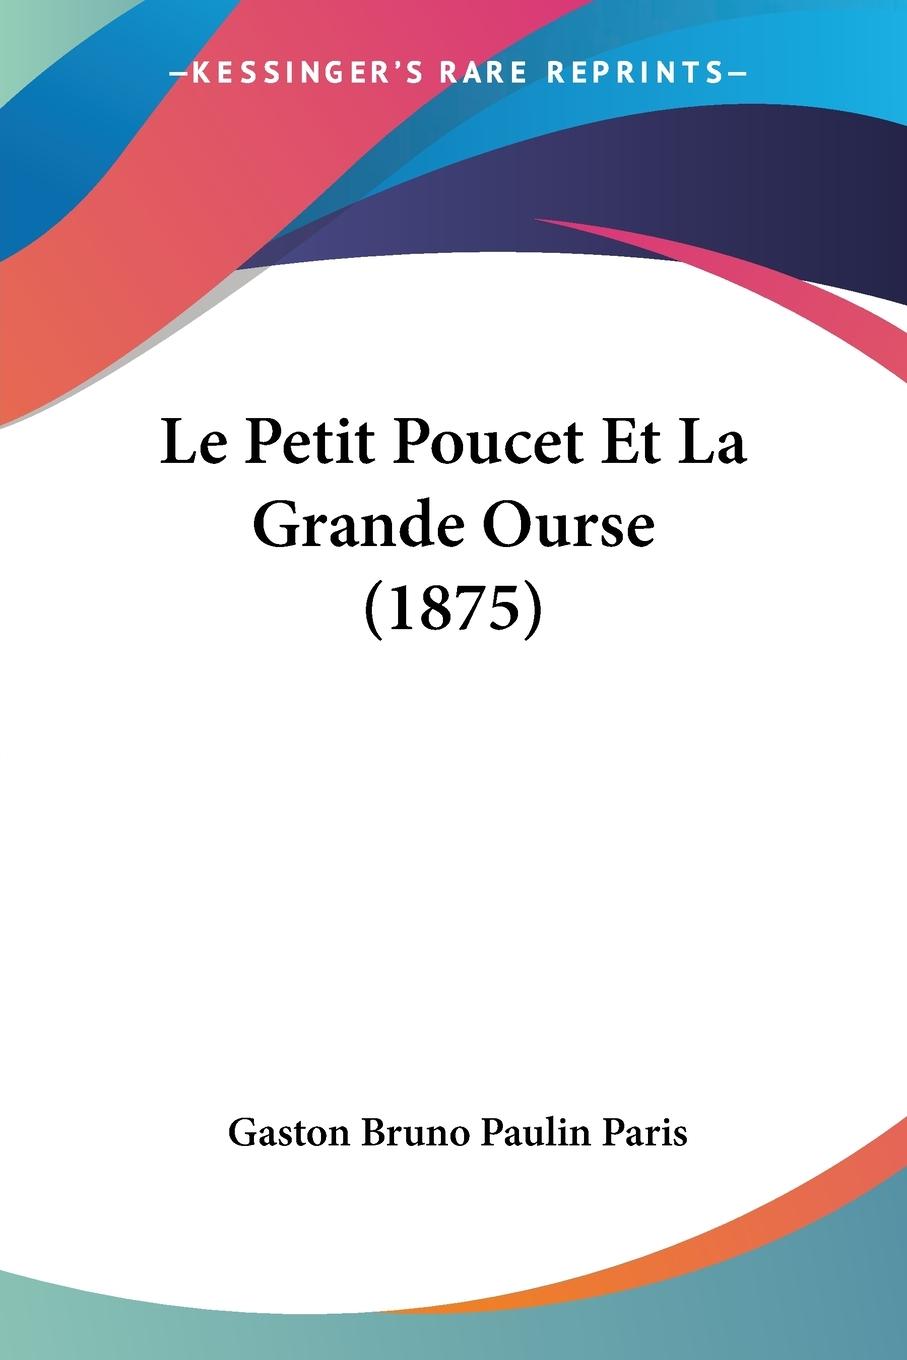 Le Petit Poucet Et La Grande Ourse (1875) - Paris, Gaston Bruno Paulin